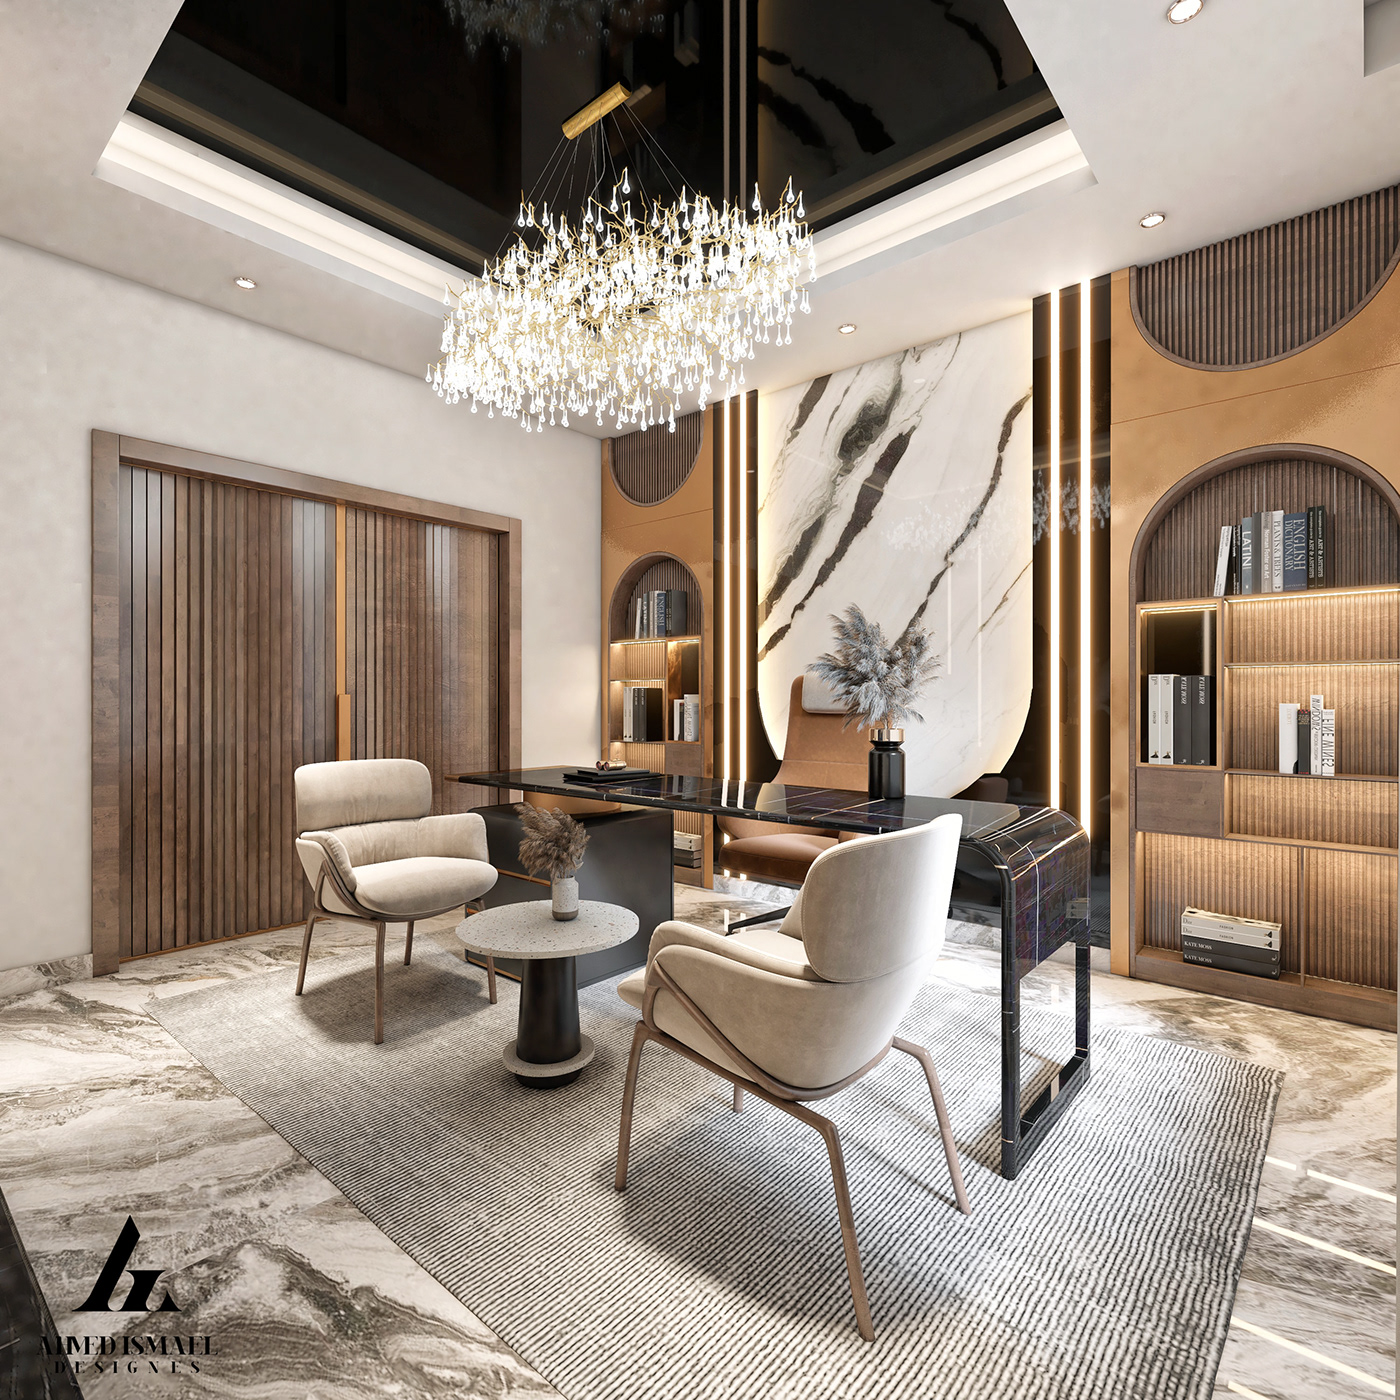 3ds max architecture design Interior interior design  luxury modern Office Render visualization